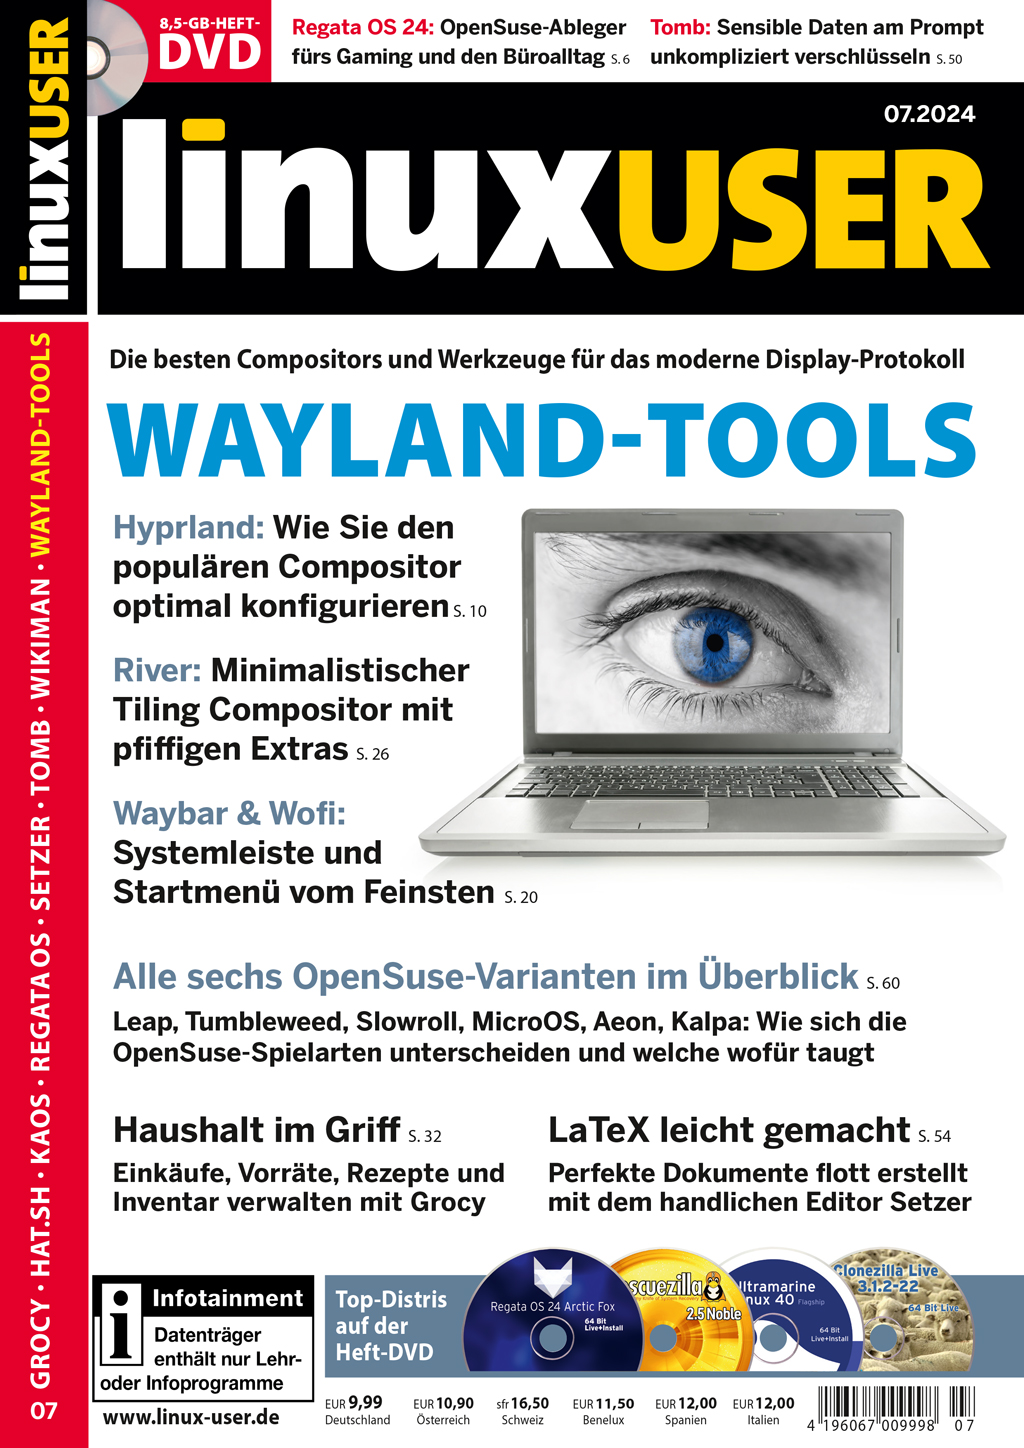 LinuxUser DVD 07/2024